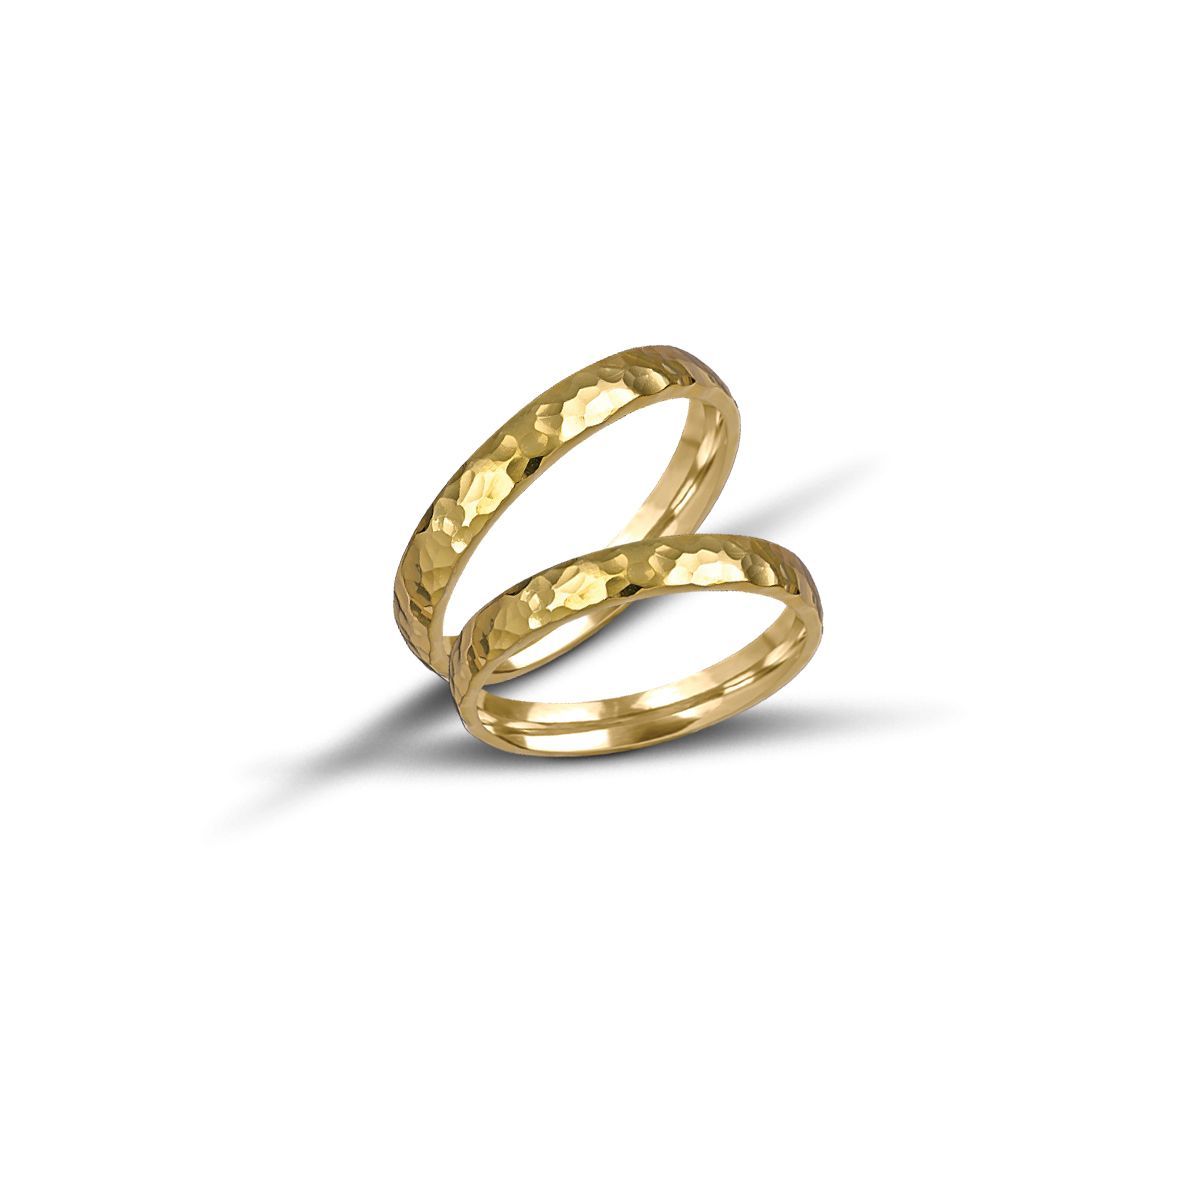 Golden wedding rings 3.2mm (code VK1001/32 sf)